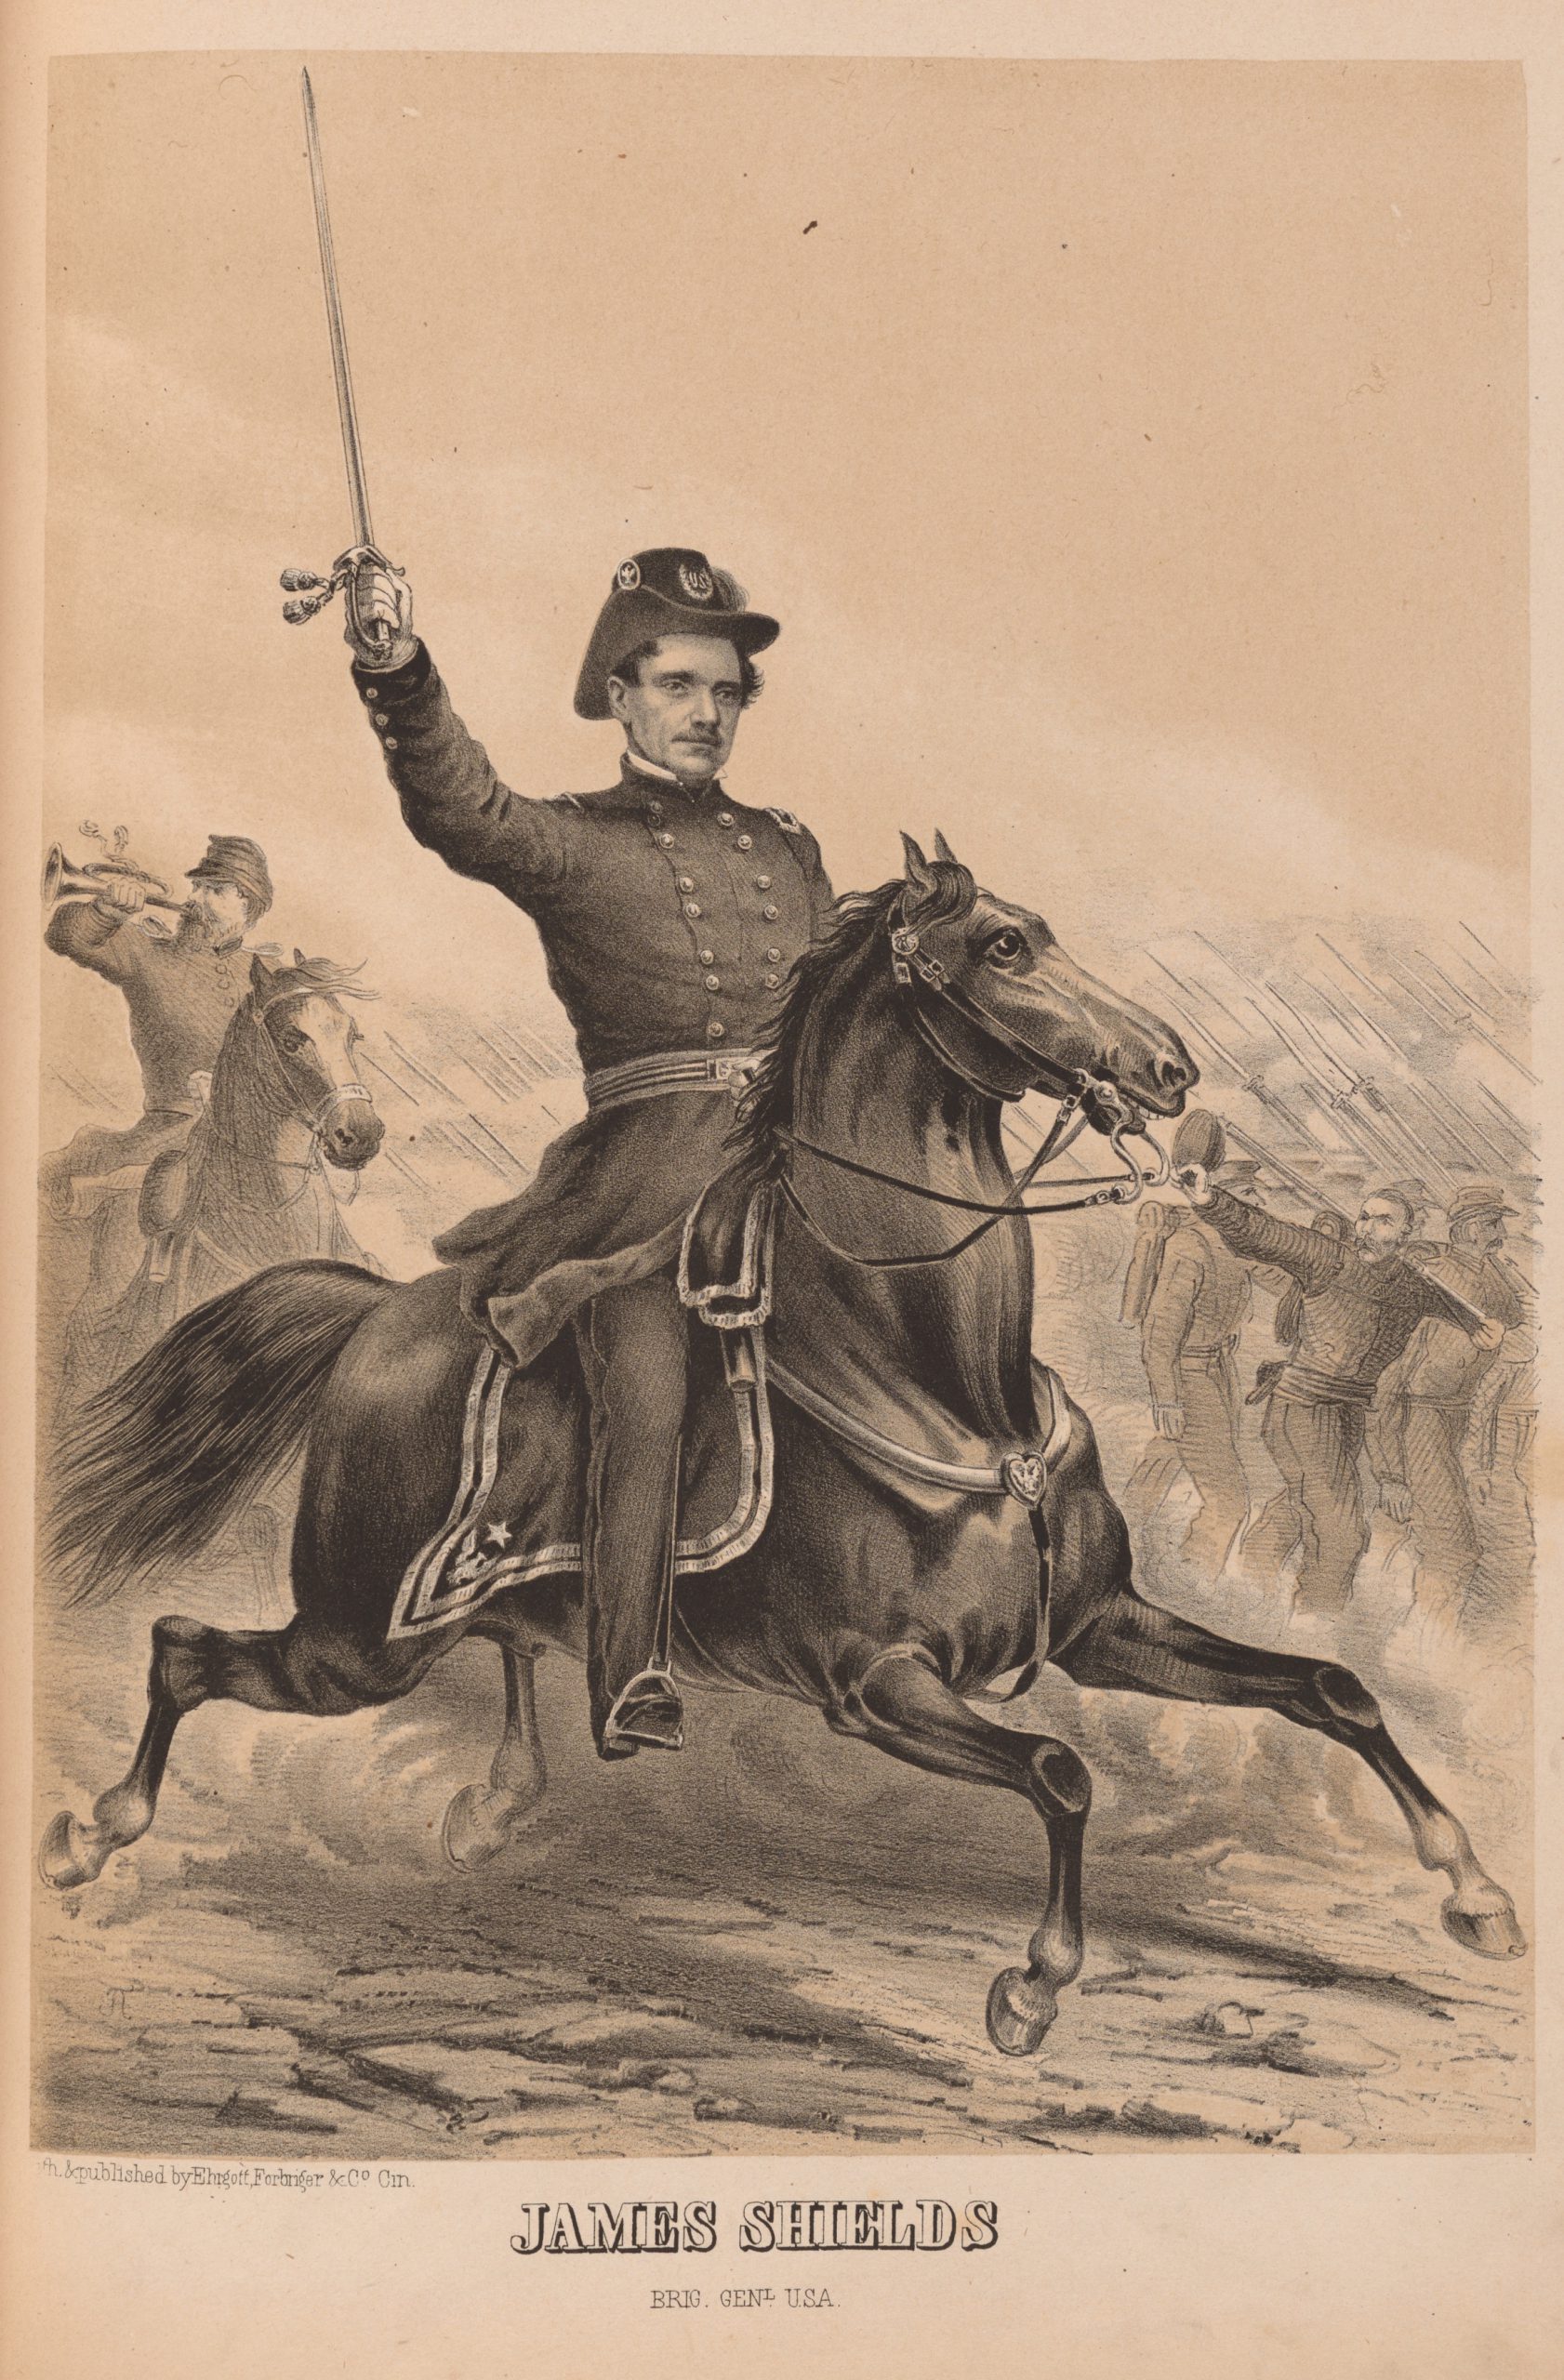 James Shields on horseback